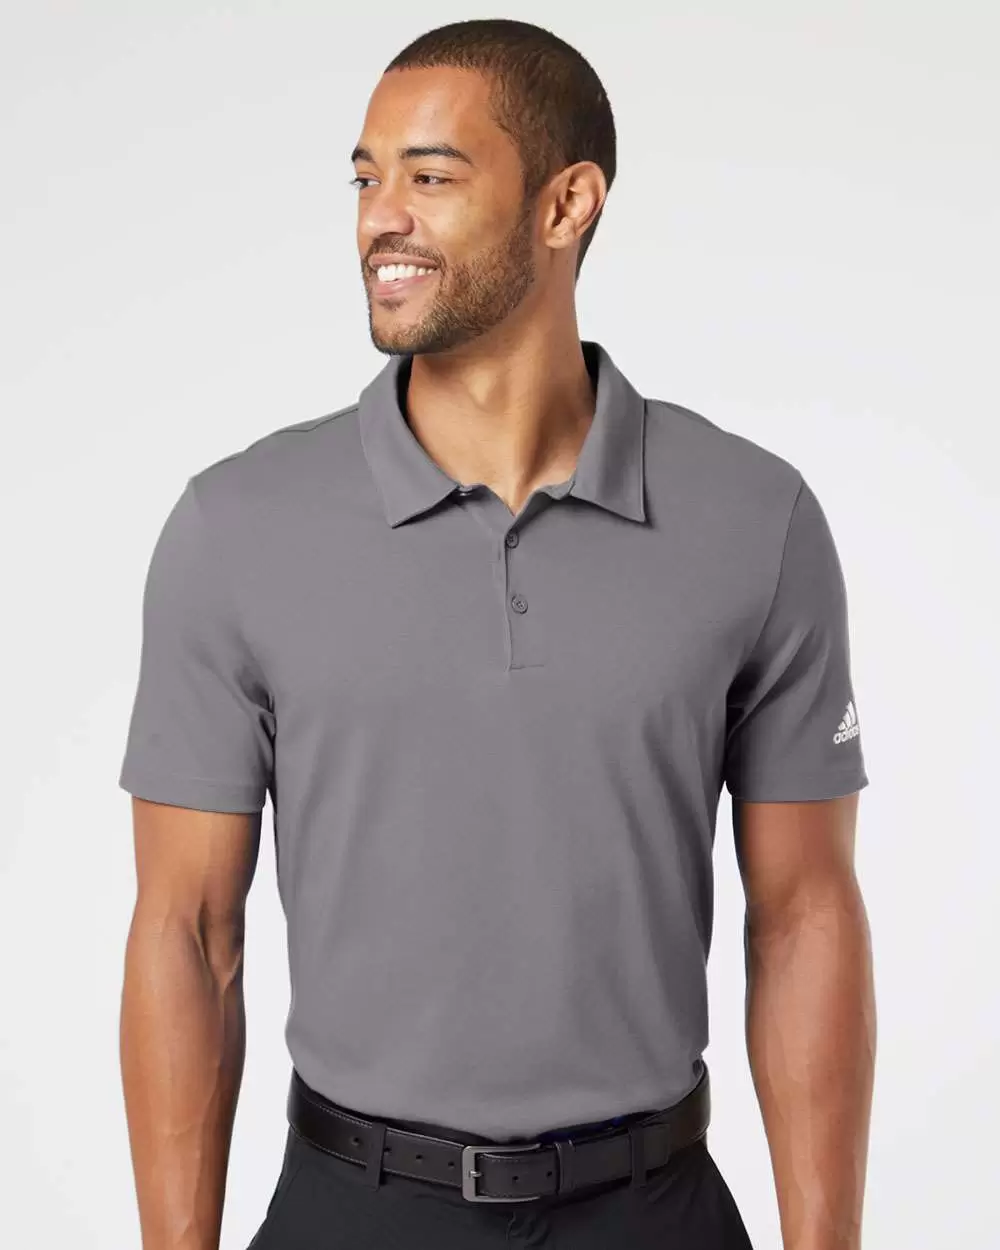 tormenta emparedado Cadena Adidas Golf Clothing A322 Cotton Blend Sport Shirt - From $30.85